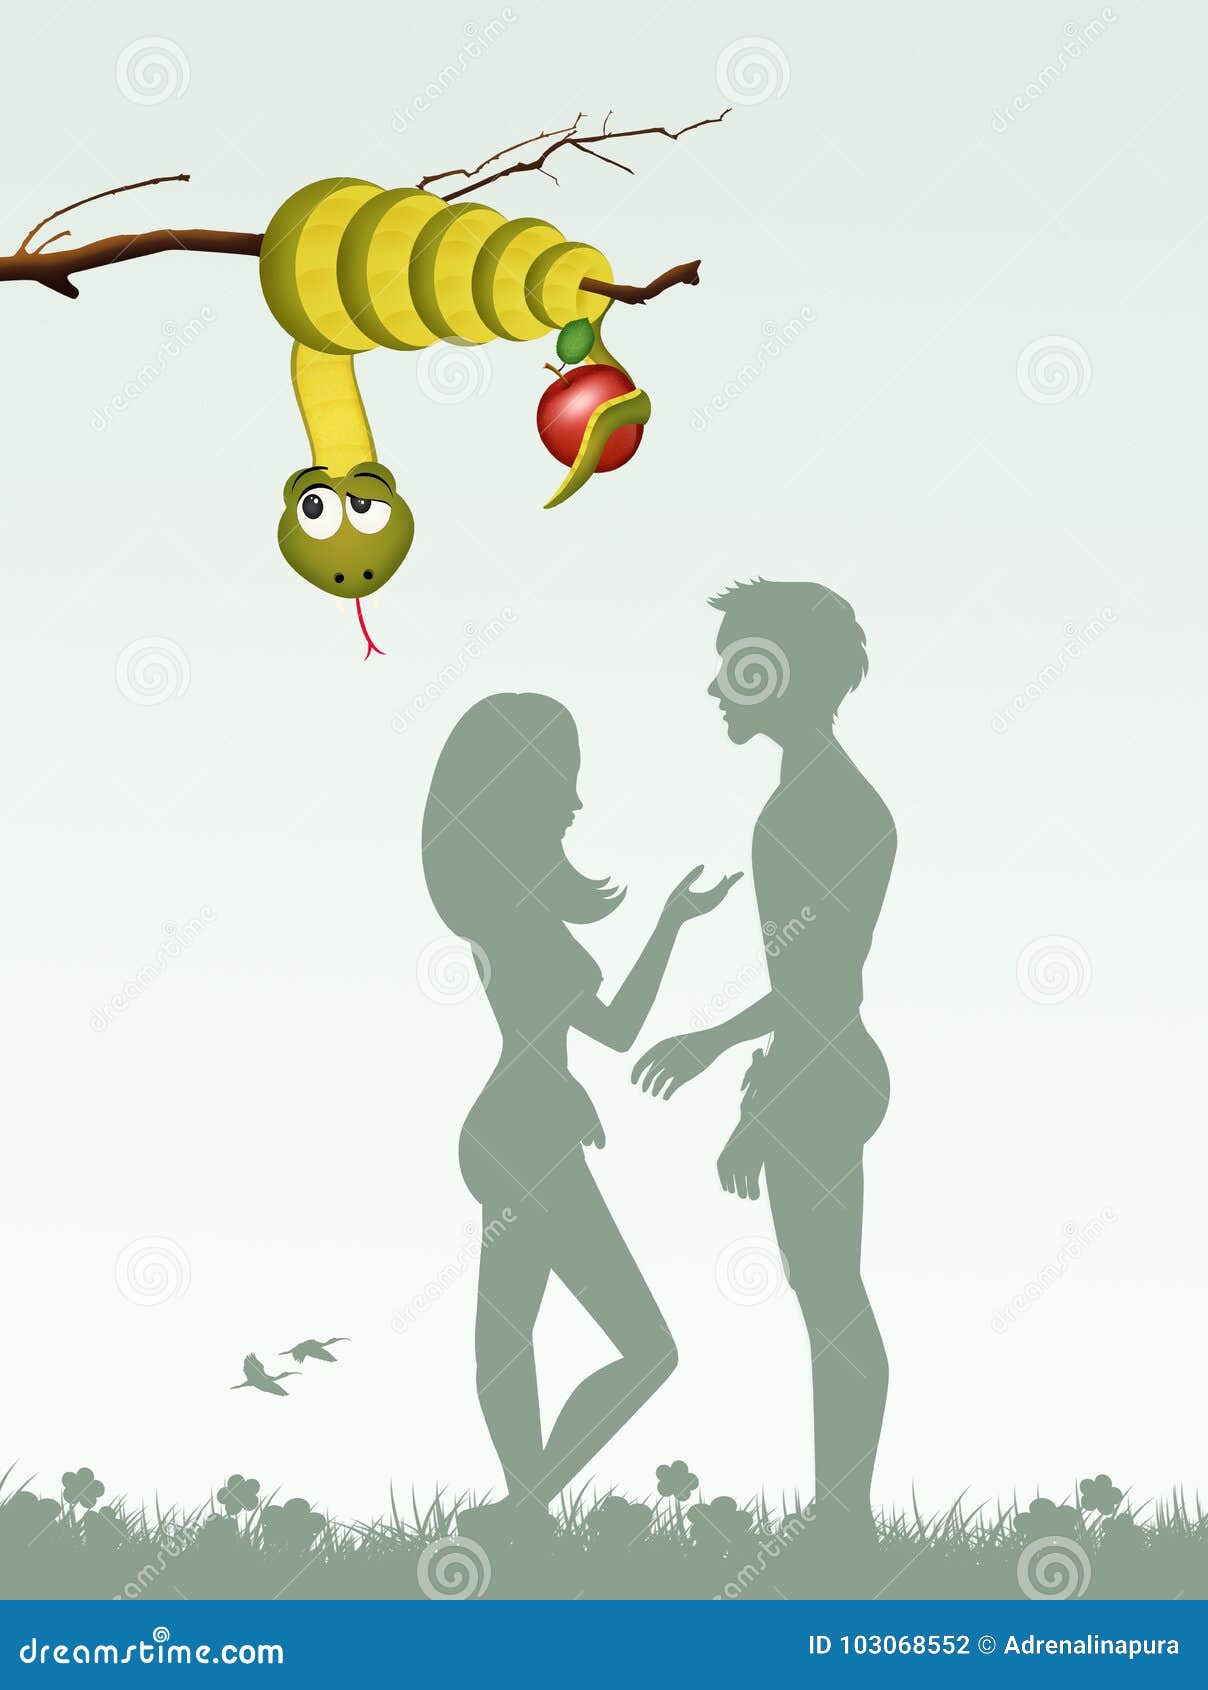 Adam And Eve Artnouveau Style Stock Illustration 